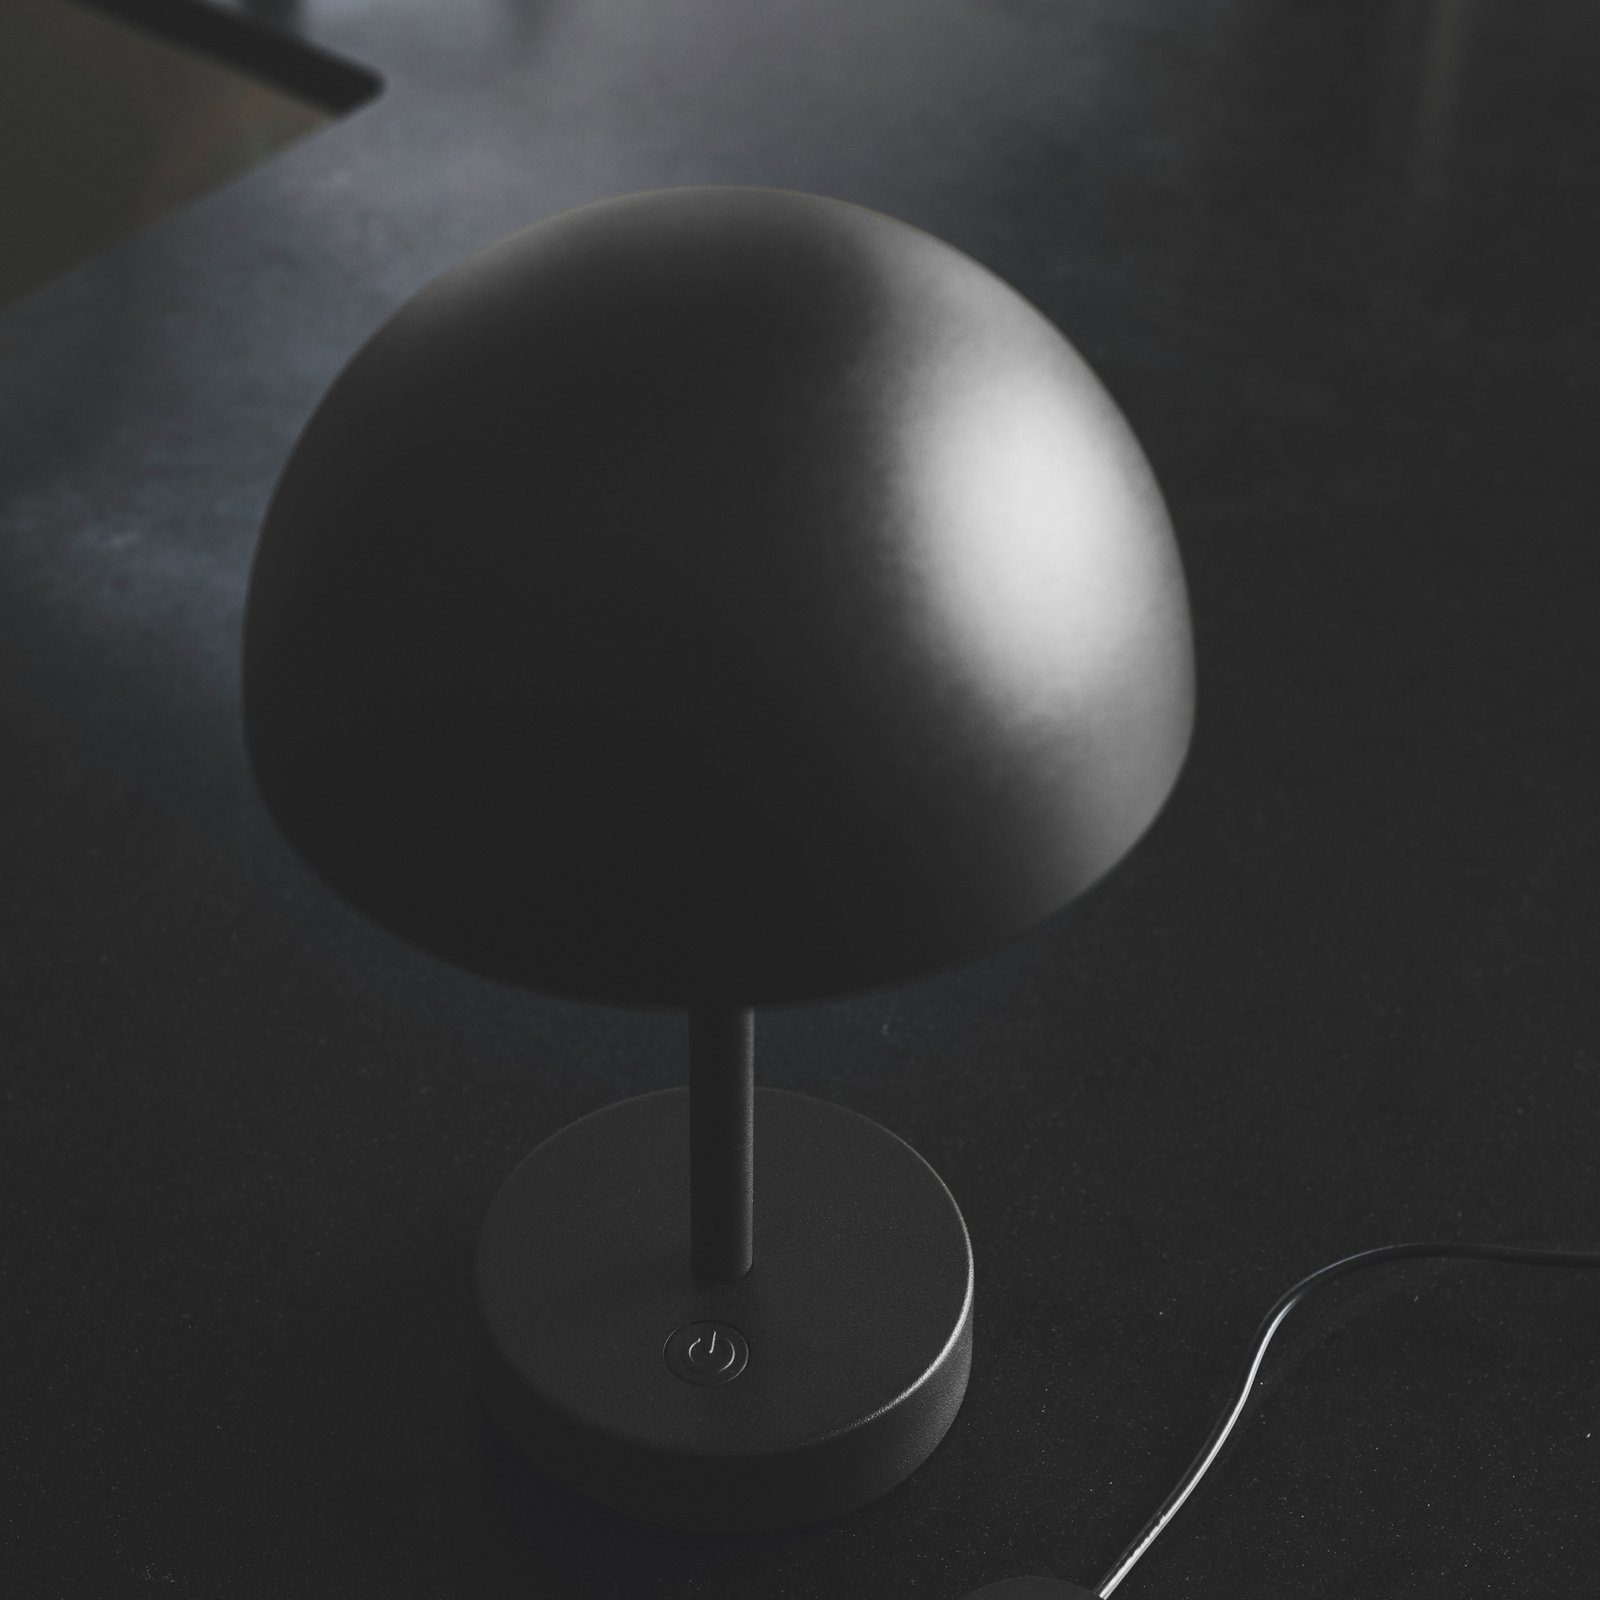 Lampe de table LED rechargeable Ellen To-Go, aluminium, noir